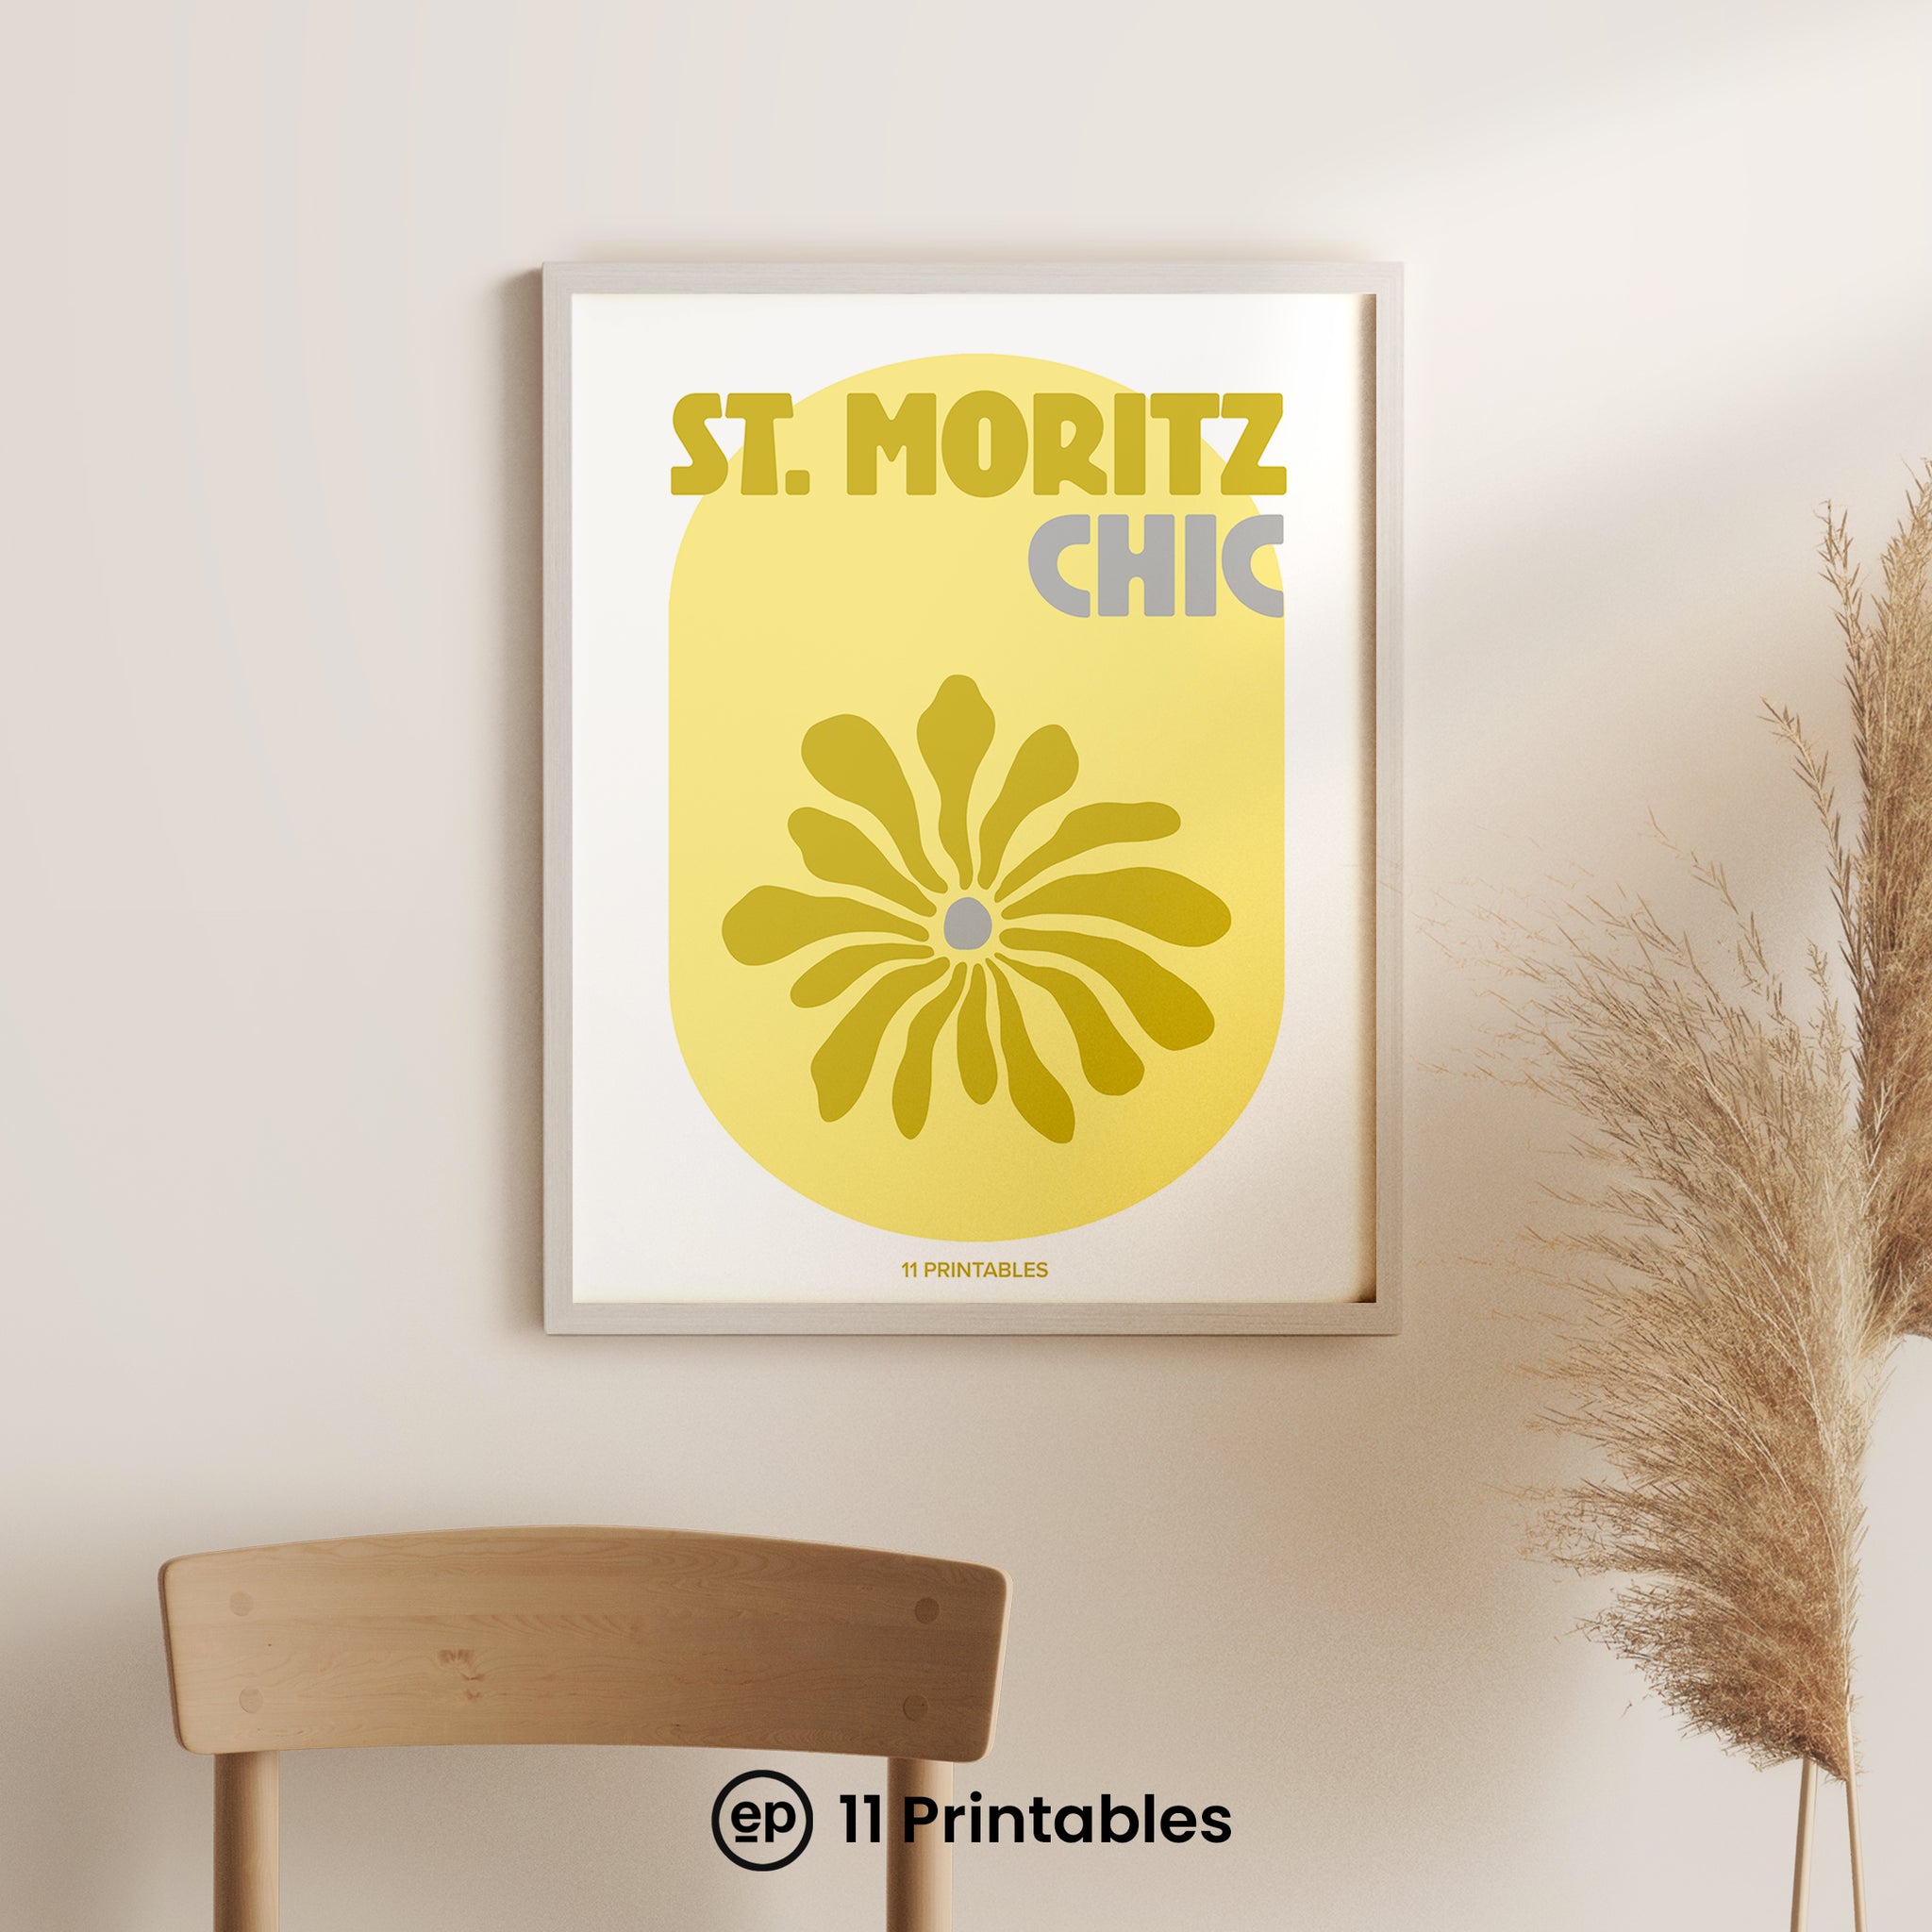 St. Moritz Chic Yellow & White Poster